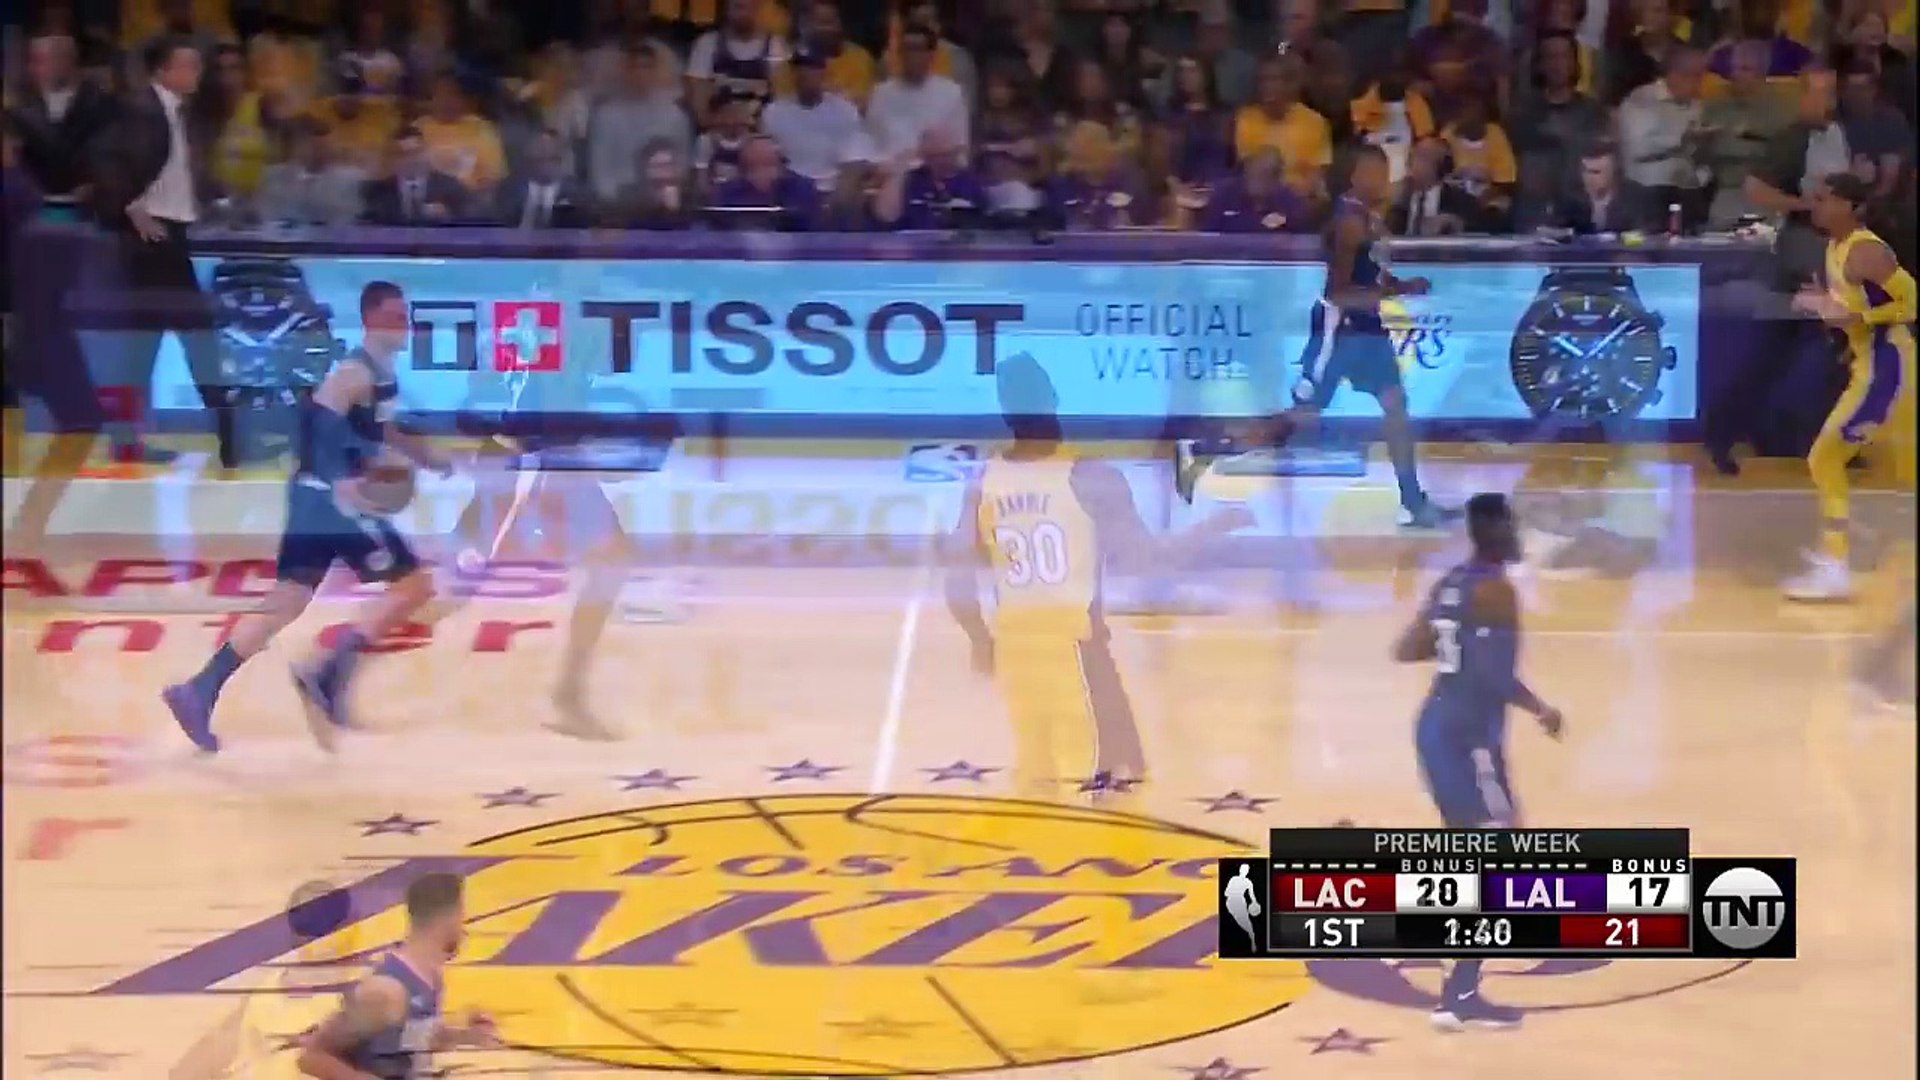 Lakers to cut DeAndre Jordan after brutal viral moment